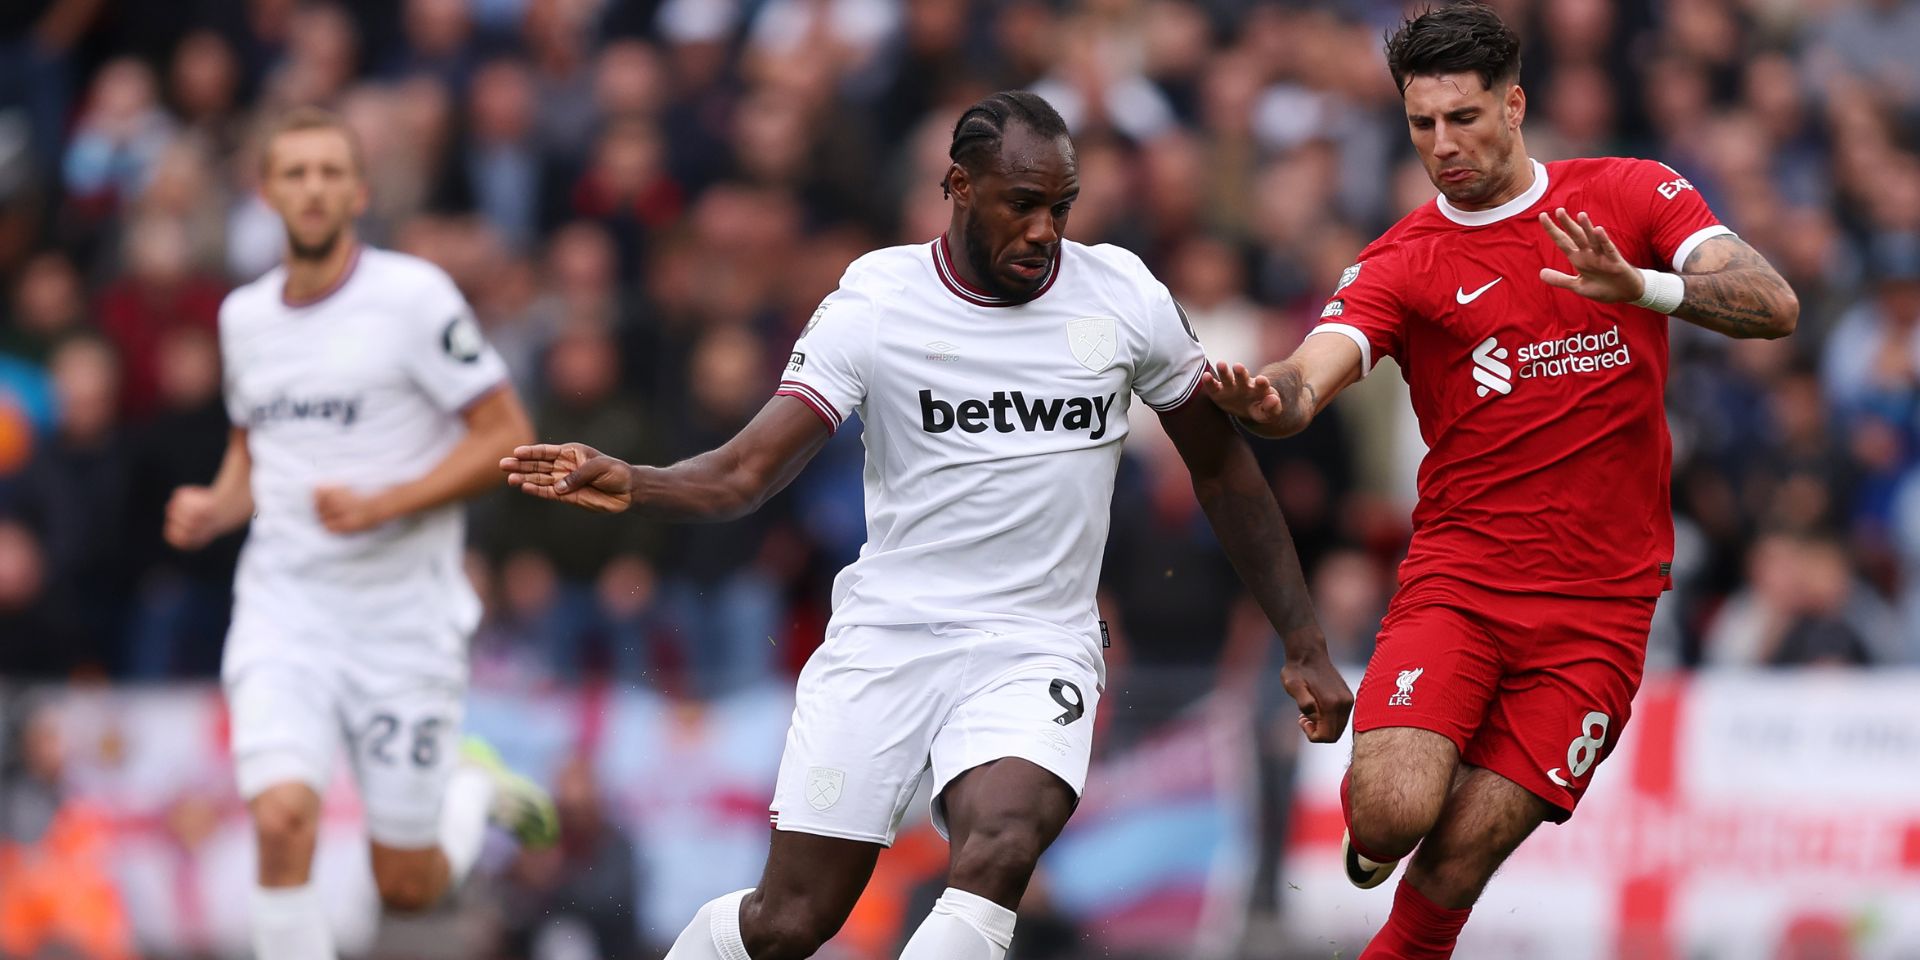 "No vull que el Liverpool guanyi la lliga": Antonio continua venjada